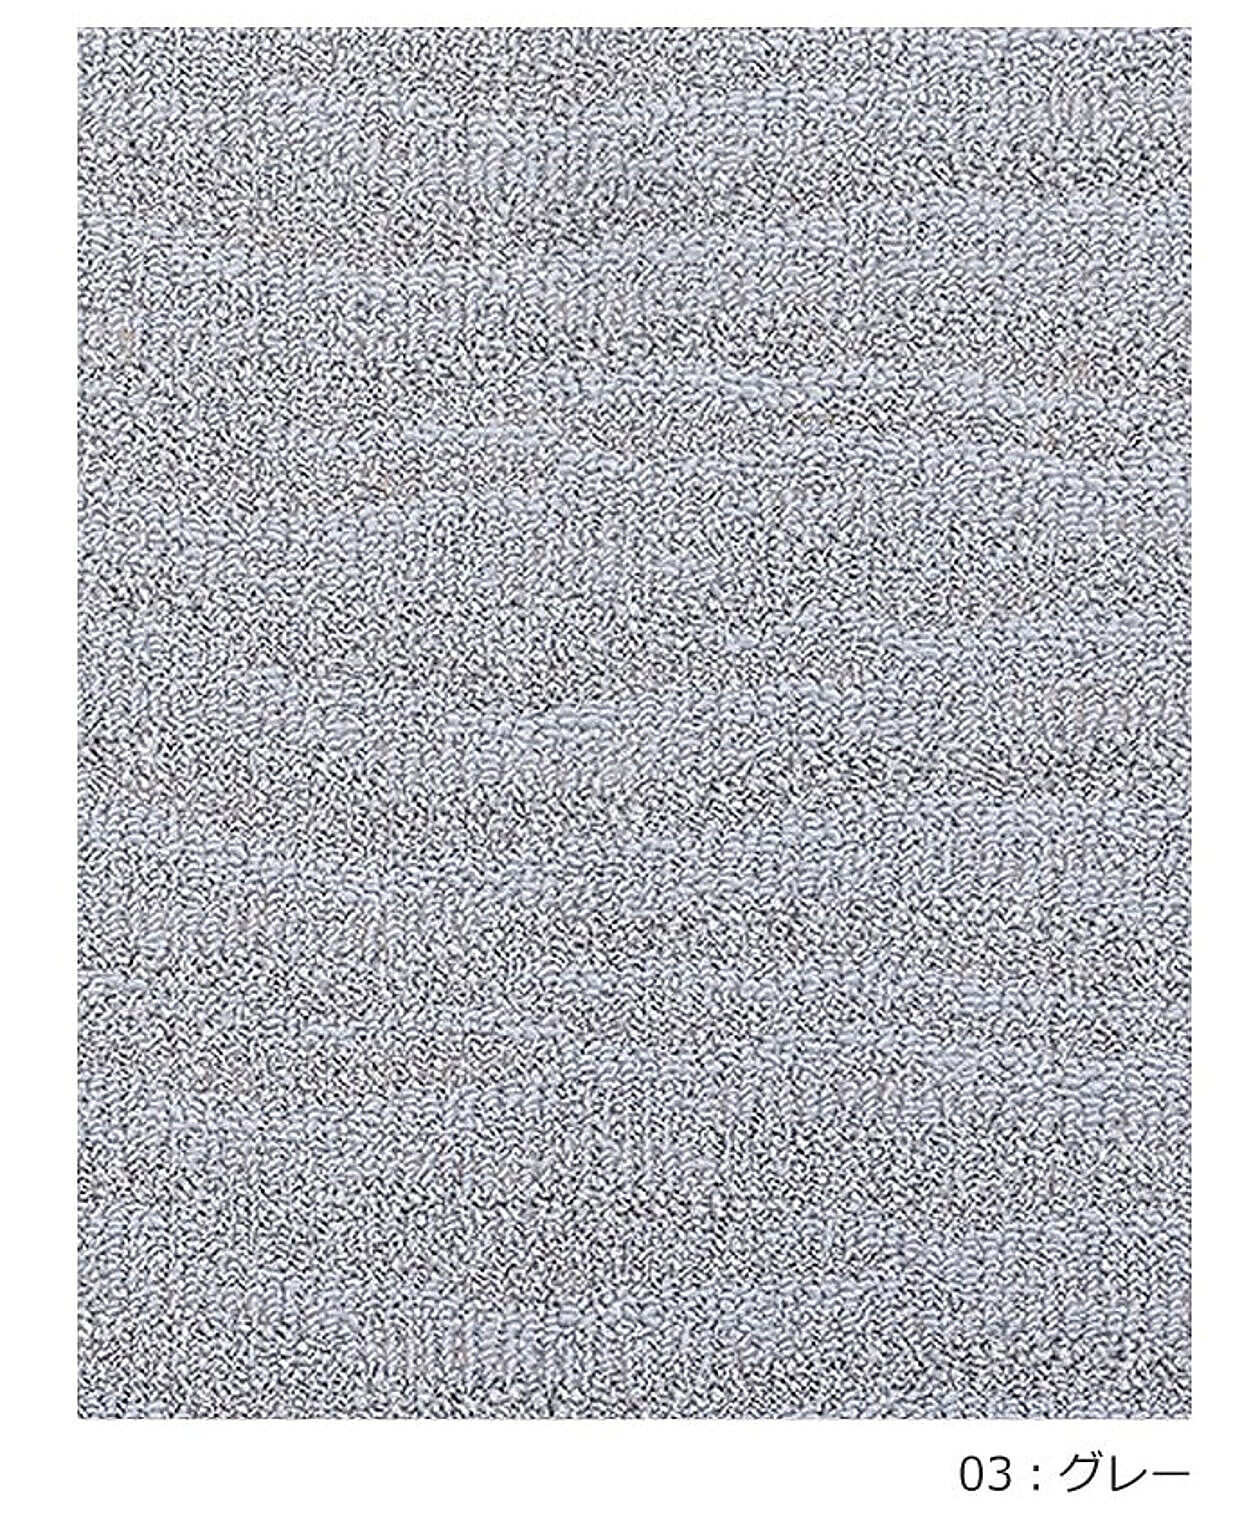 ラグ ラグマット 絨毯 日本製 カーペット 北欧 デザイン 防ダニ 抗菌 prevell プレーベル ポート 本間3畳 約191×286cm 3帖 3畳 三畳 引っ越し 新生活